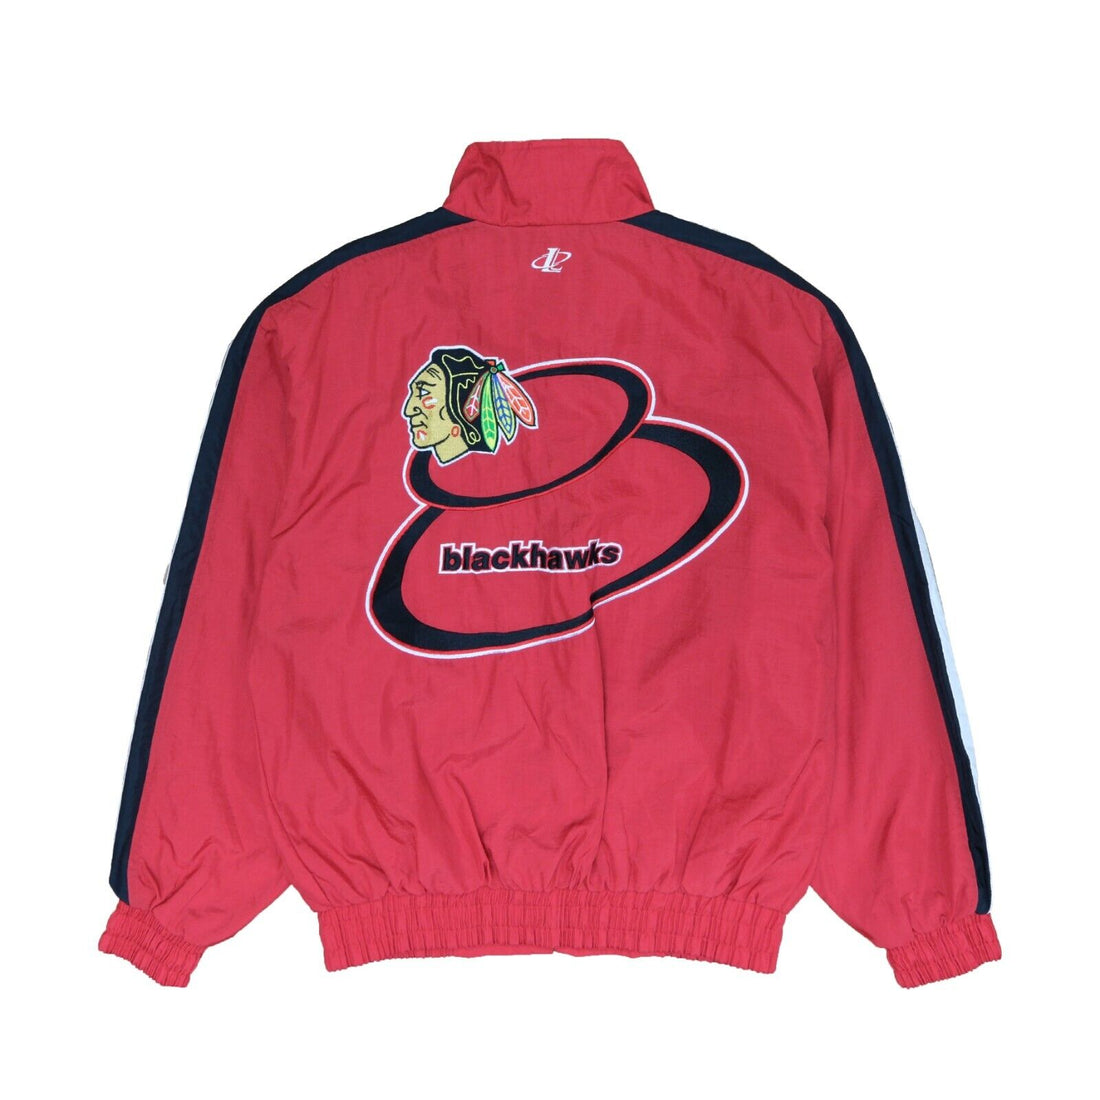 Vintage Chicago Blackhawks Logo Athletic Windbreaker Jacket Size Medium Red NHL